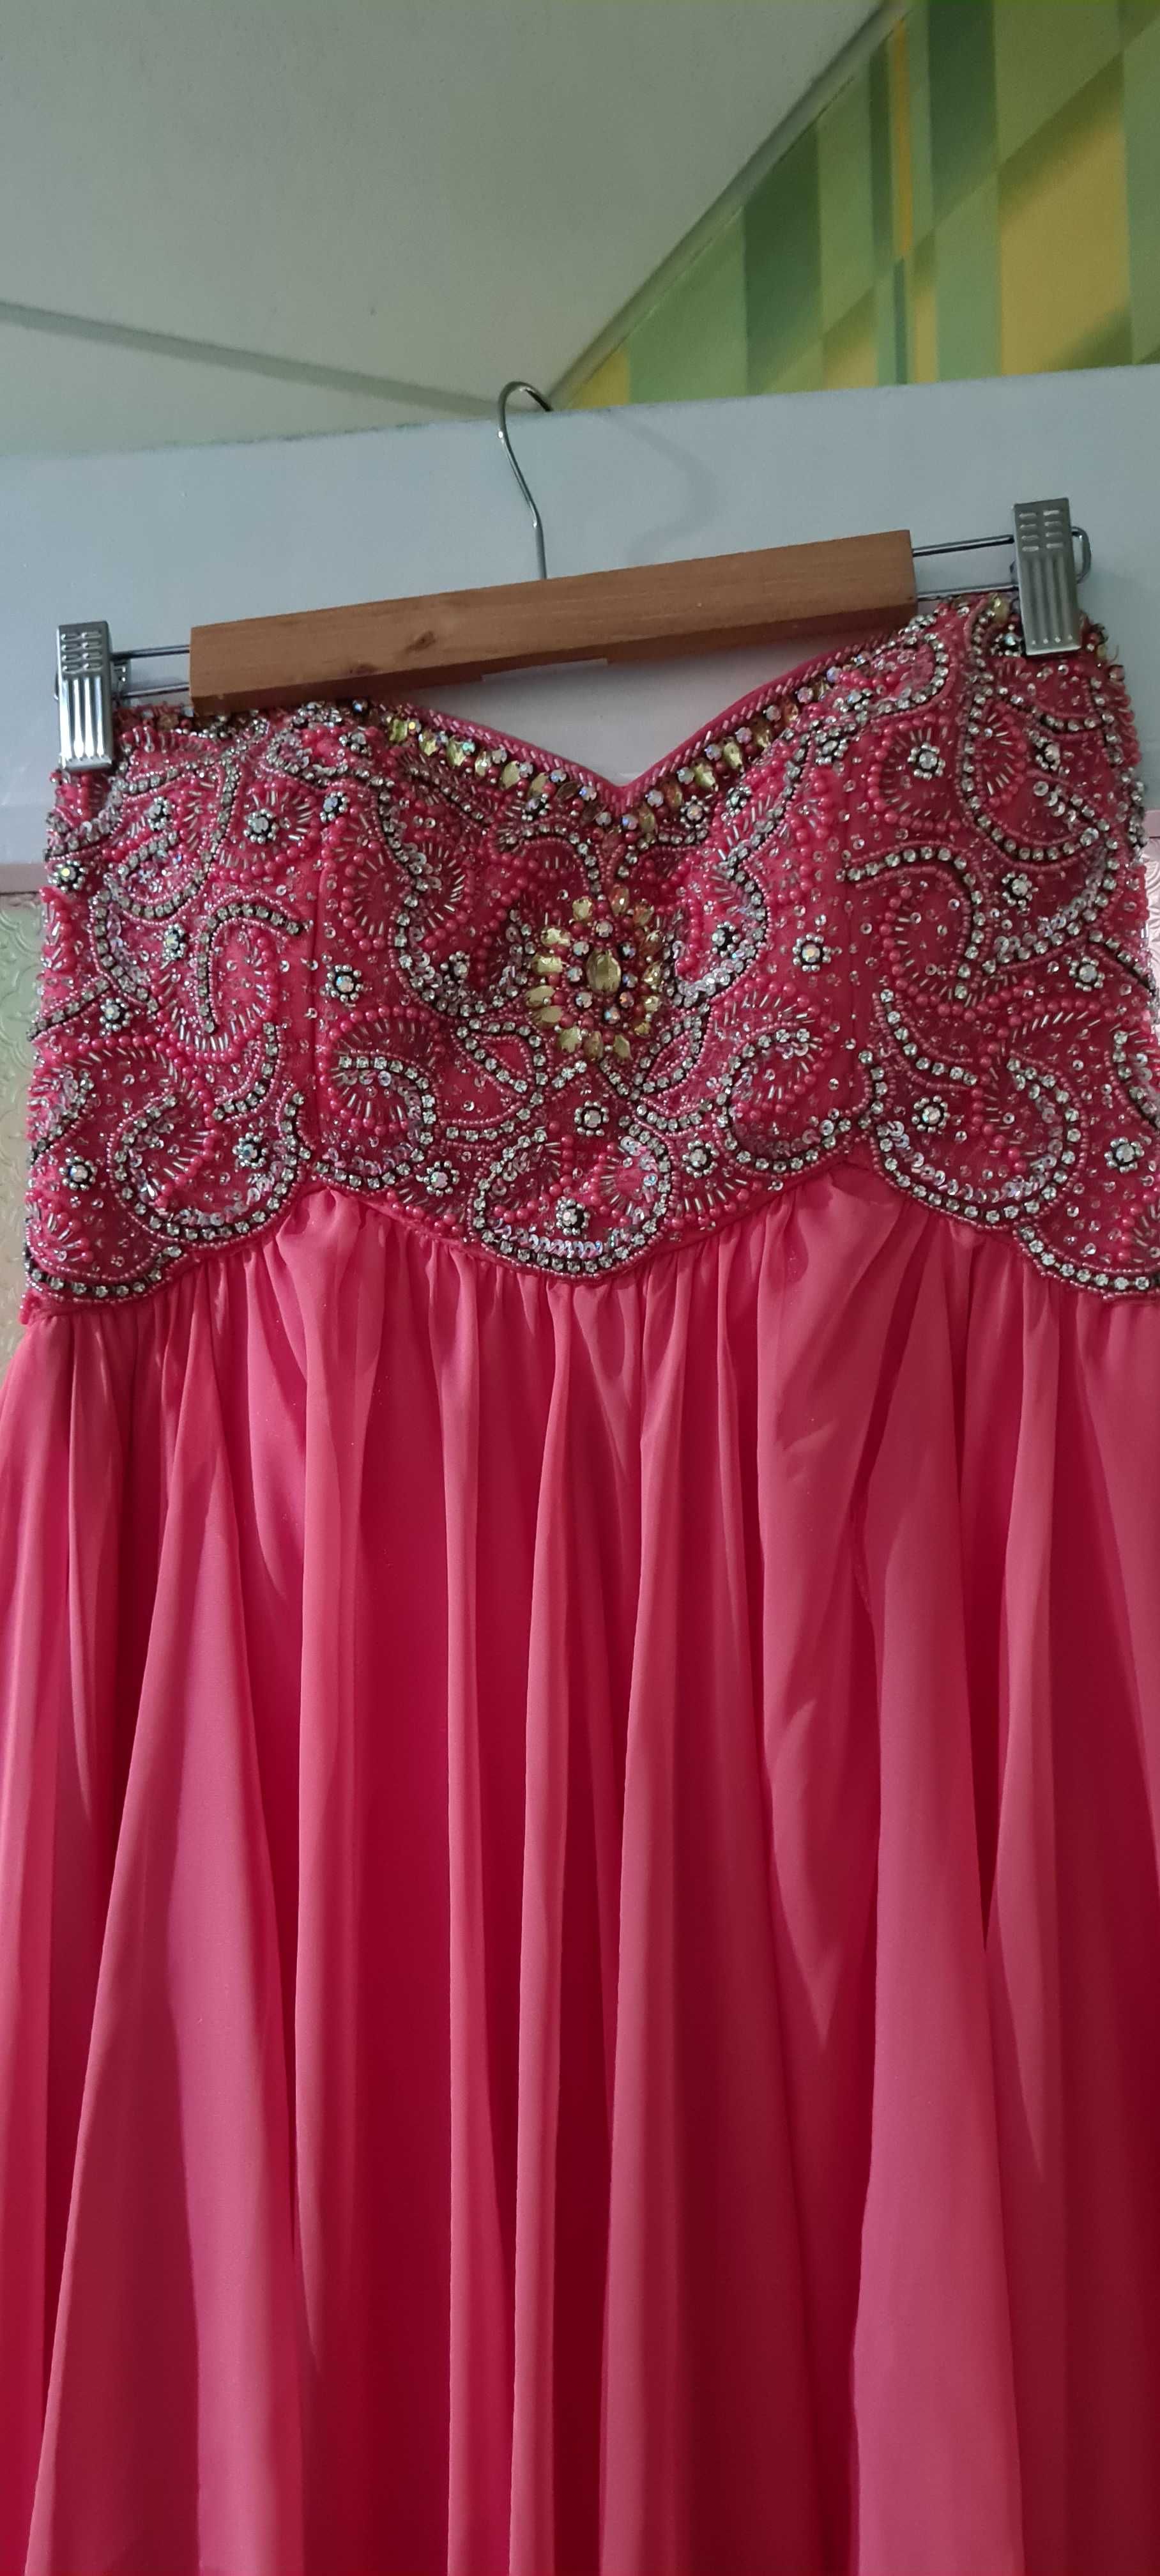 Бална рокля от Sherry Hill оригинал, размер 10 (отговаря на L)